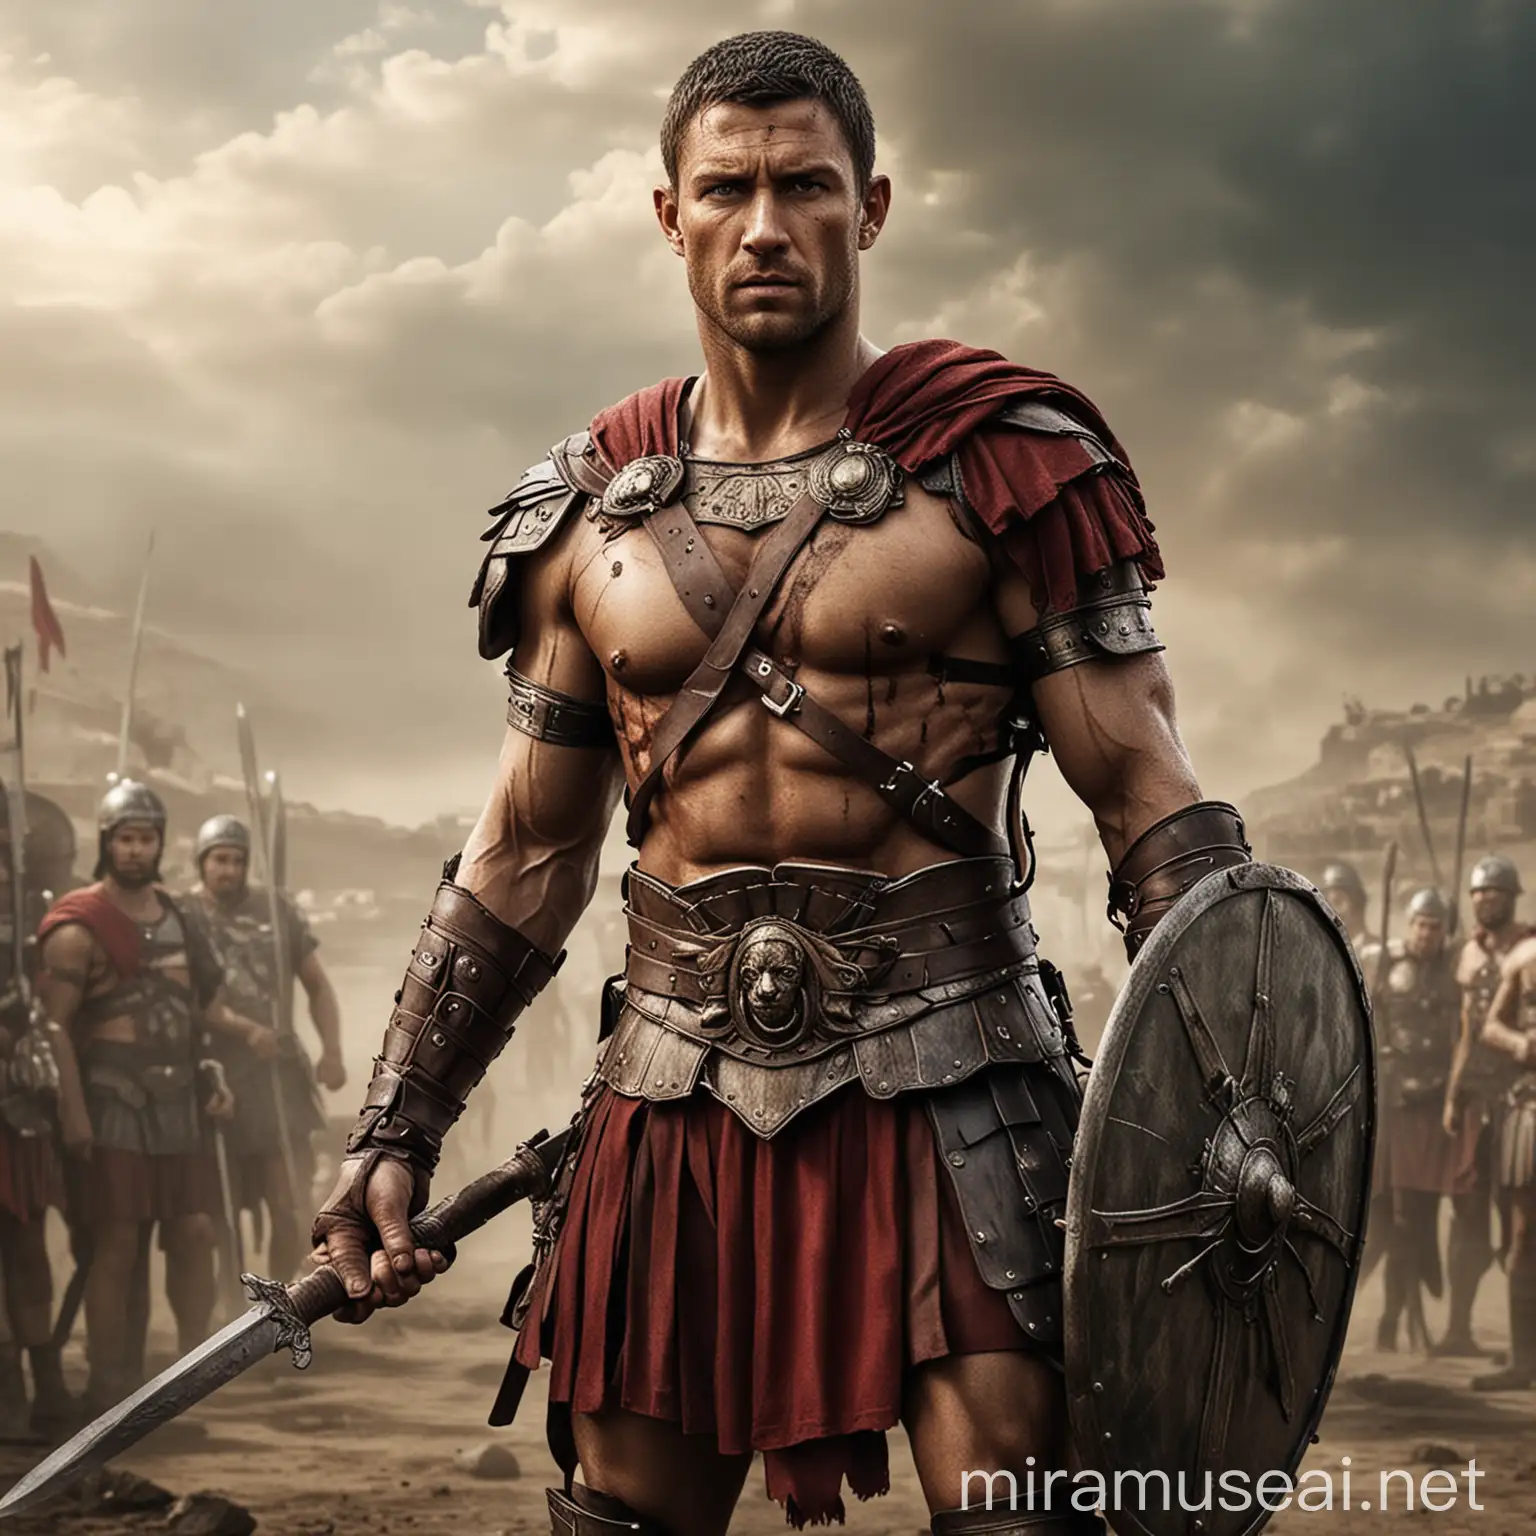 Spartacus Roman Soldier Dual Sword Armor Portrait